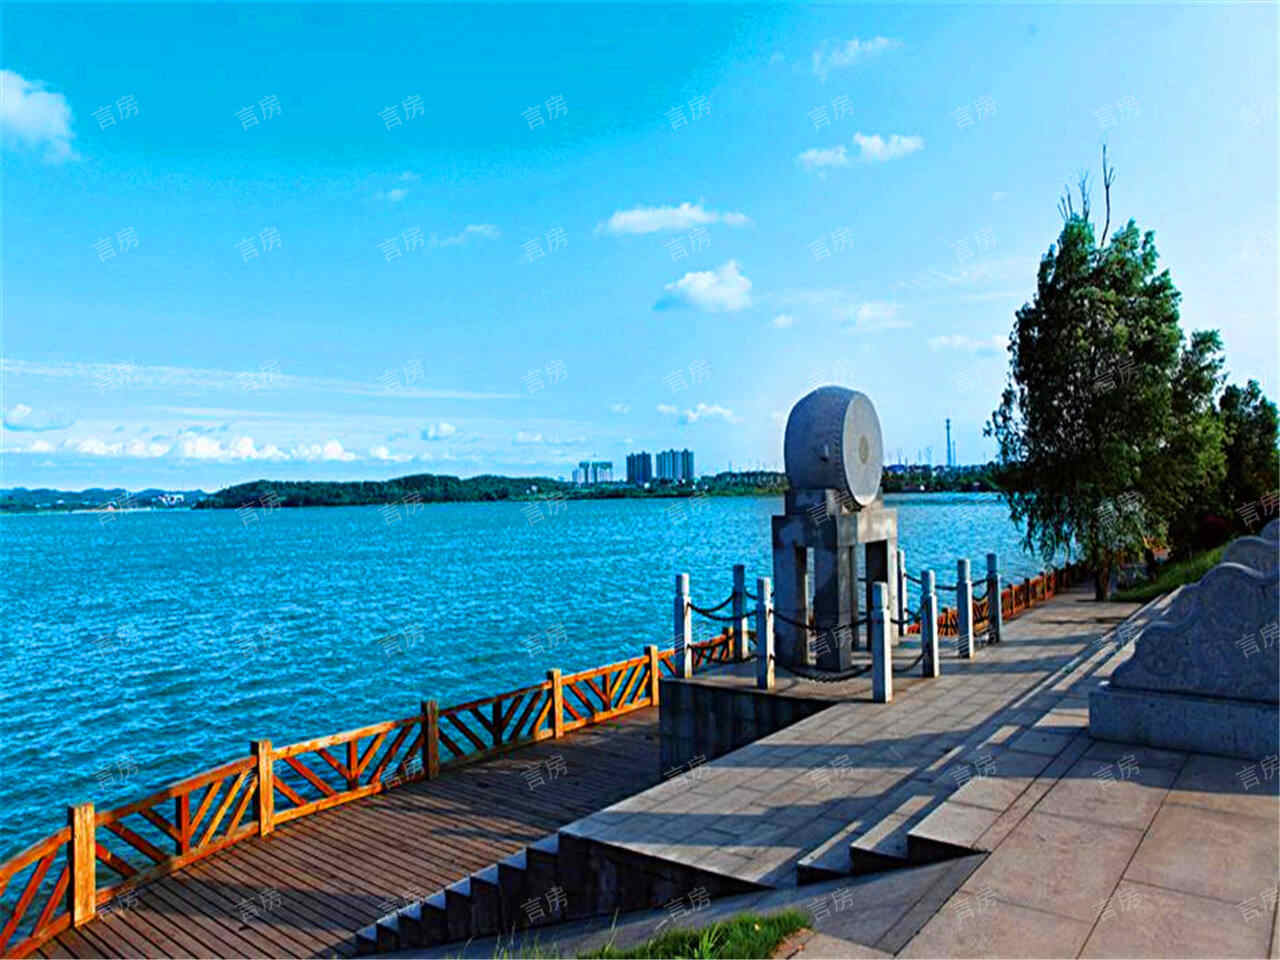 芭蕉湖恒泰雅园现场图片